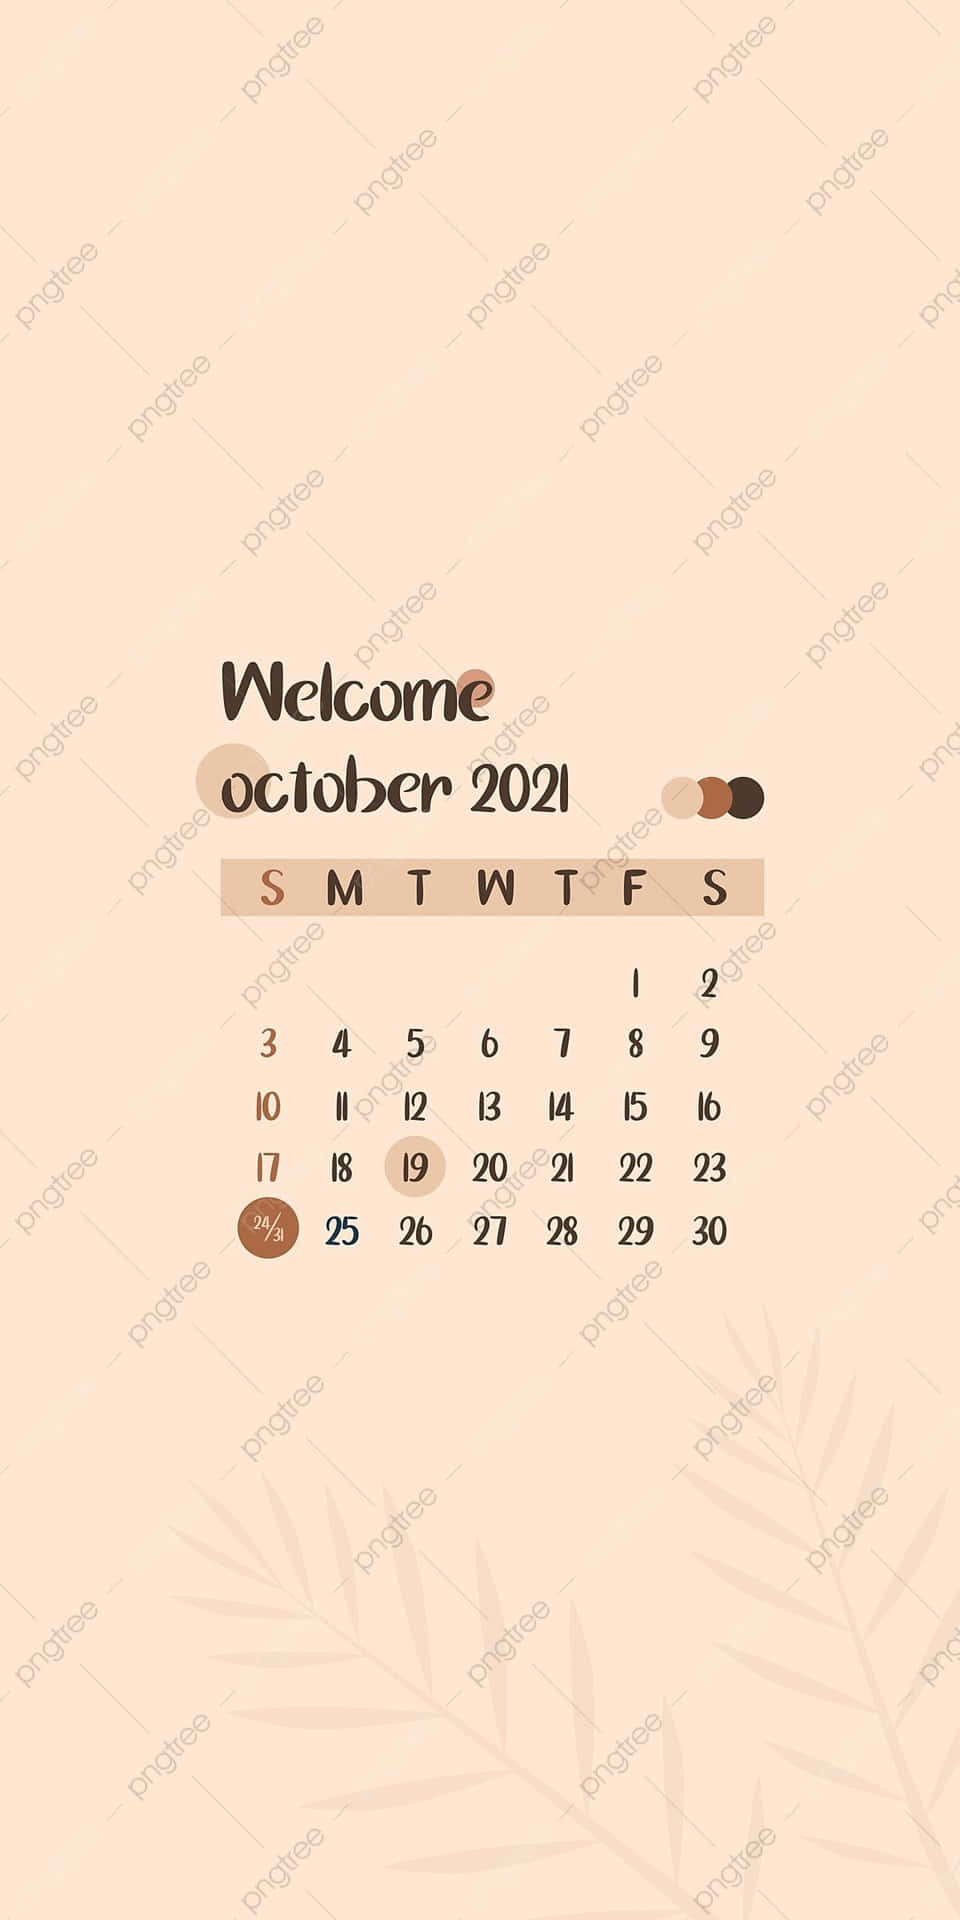 Behaltewichtige Termine Im Oktober Im Auge Mit Diesem Kalender Für Das Jahr 2021. Wallpaper